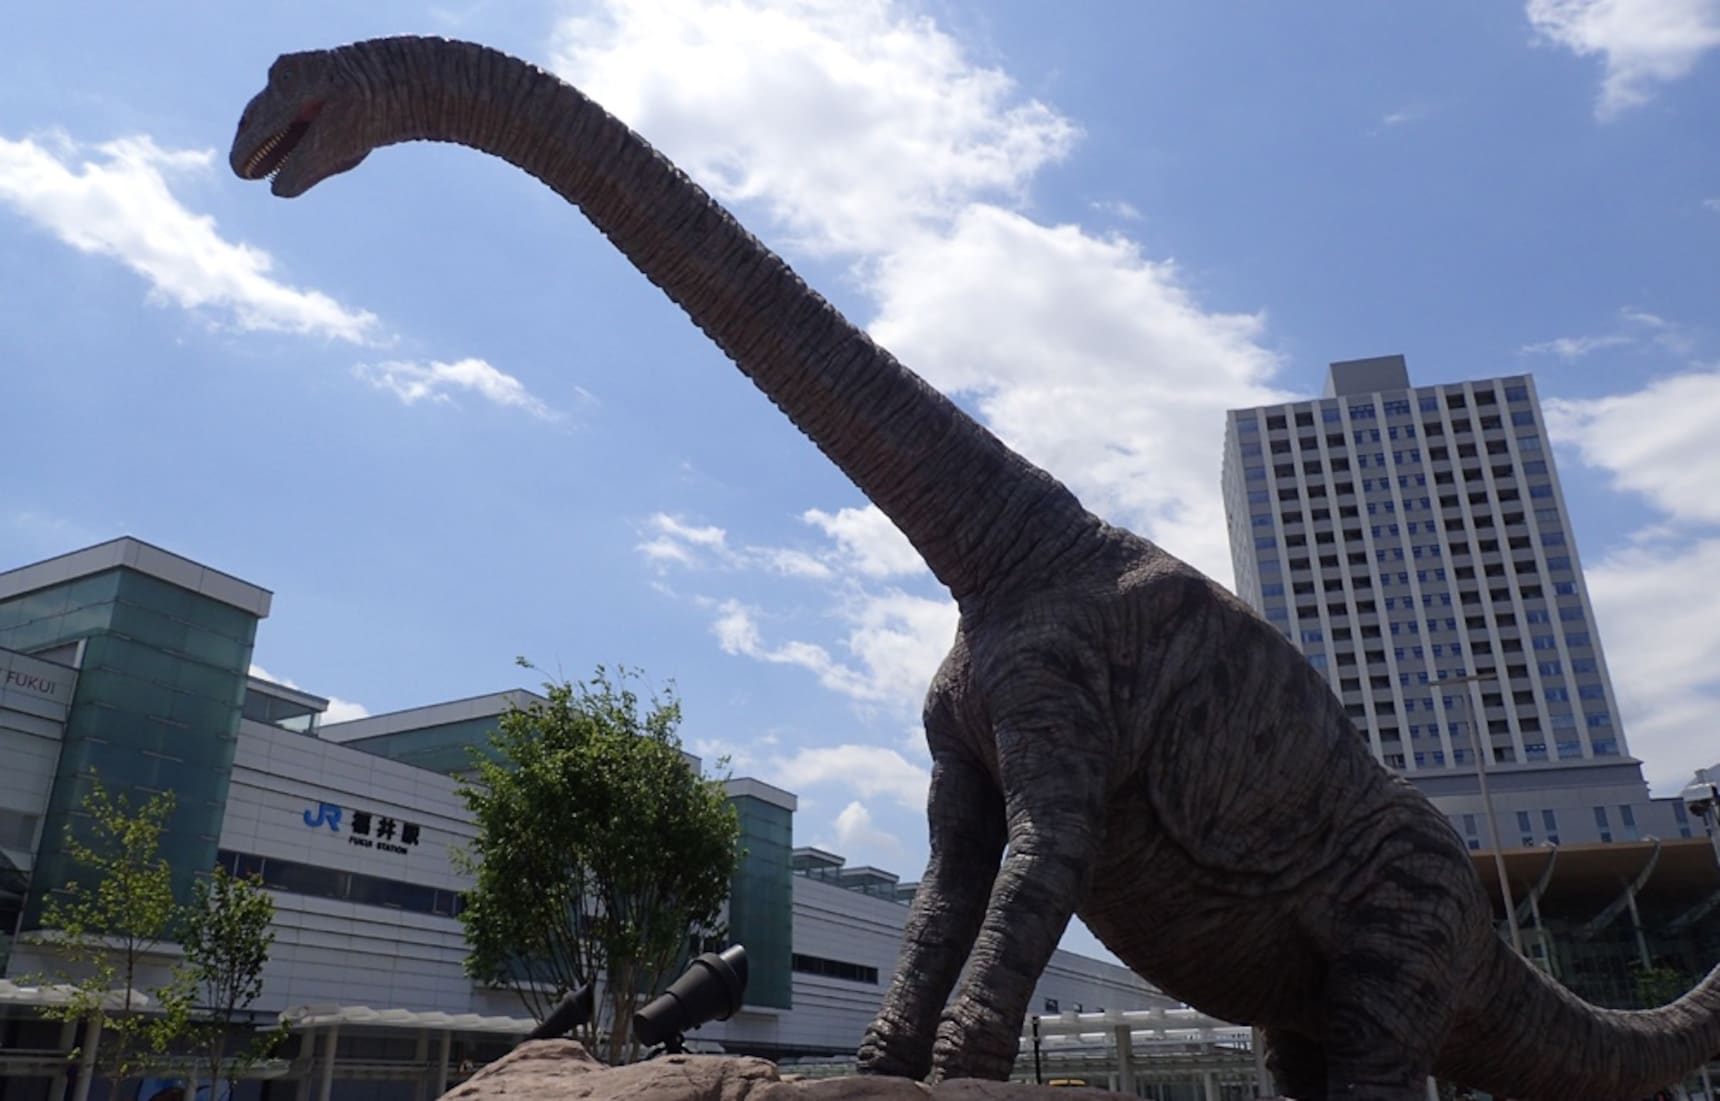 JR 후쿠이역에 공룡왕국이 등장했어요!